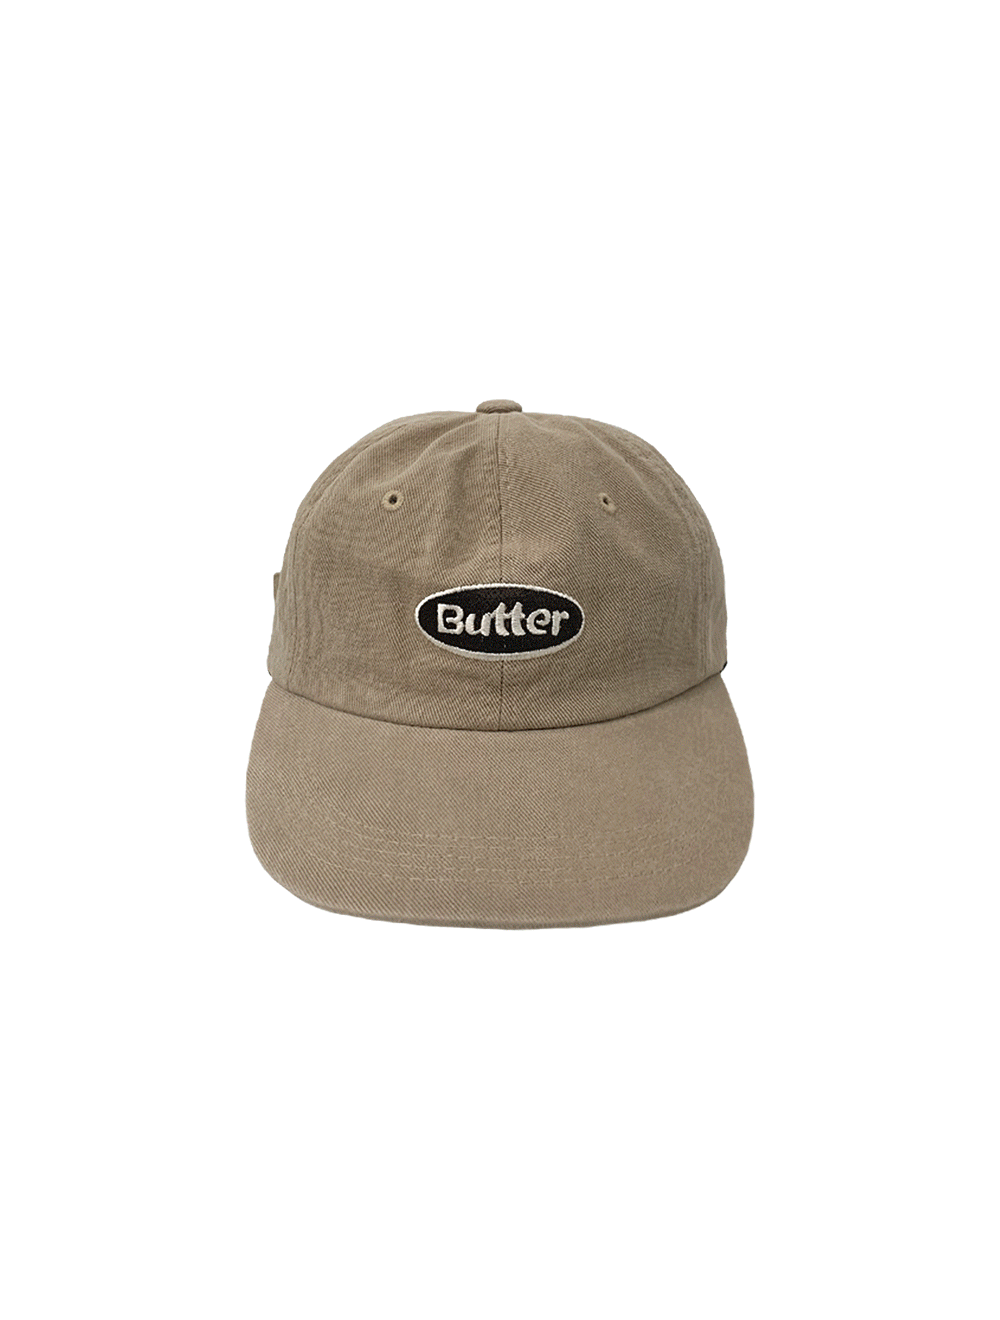 butter - cap